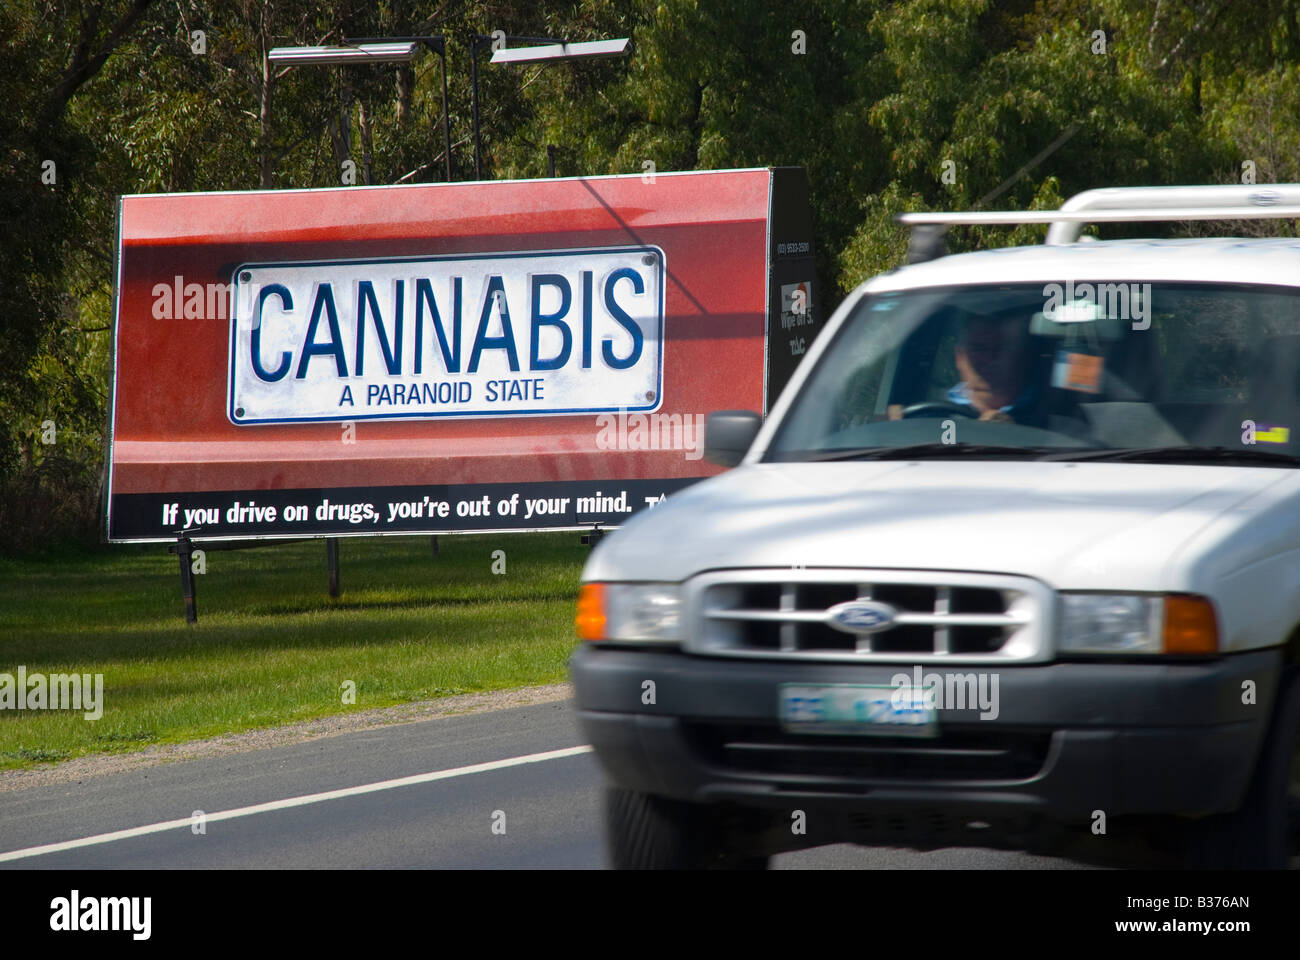 Carteles de la campaña anti-droga del Gobierno a lo largo de una autopista en Victoria, Australia Foto de stock